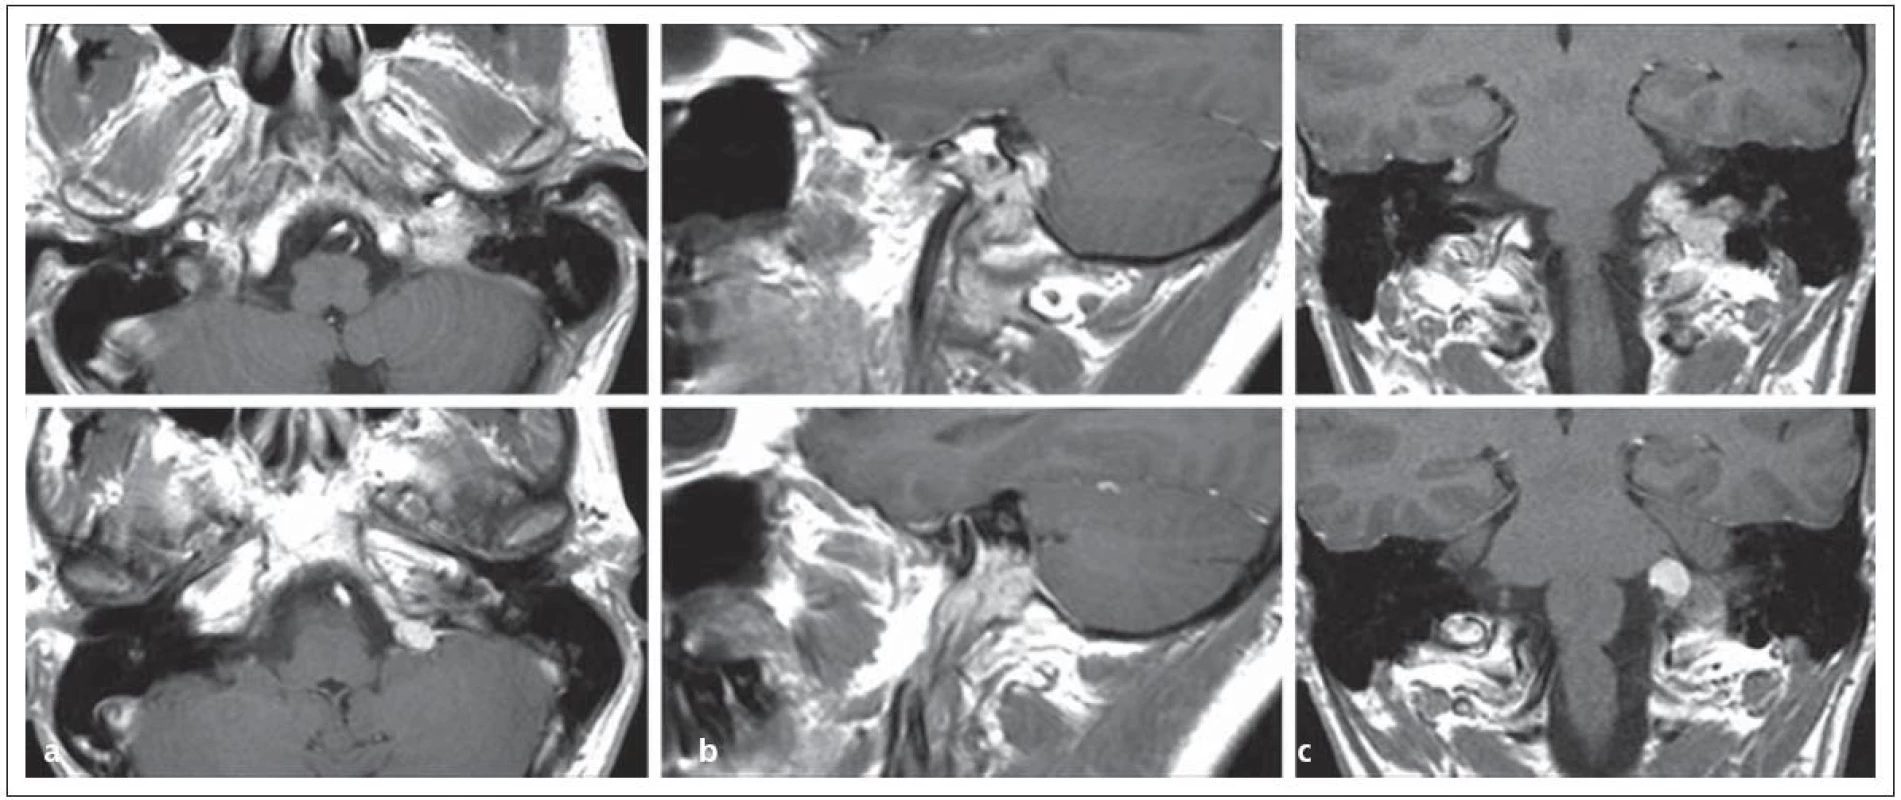 Glomus jugulare tumor sutkovitého tvaru s propagací extrakraniálně i intrakraniálně v MR zobrazení v a) transverzální, b) sagitální, c) koronární rovině.